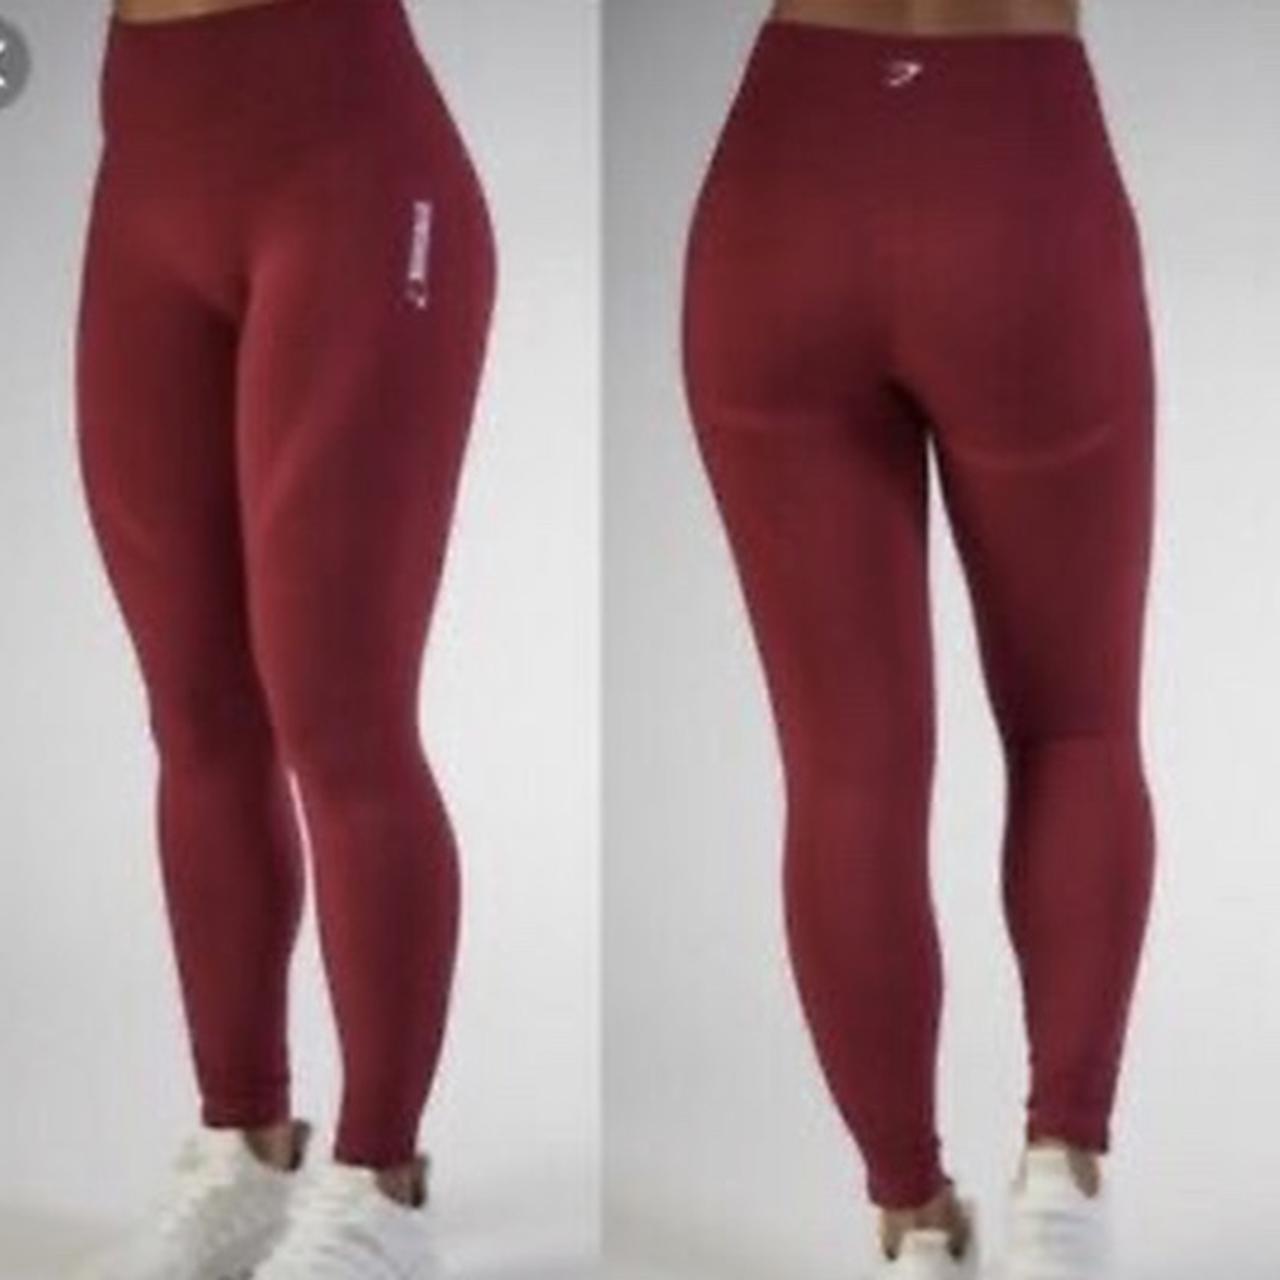 GYMSHARK energy + seamless red cropped leggings in - Depop